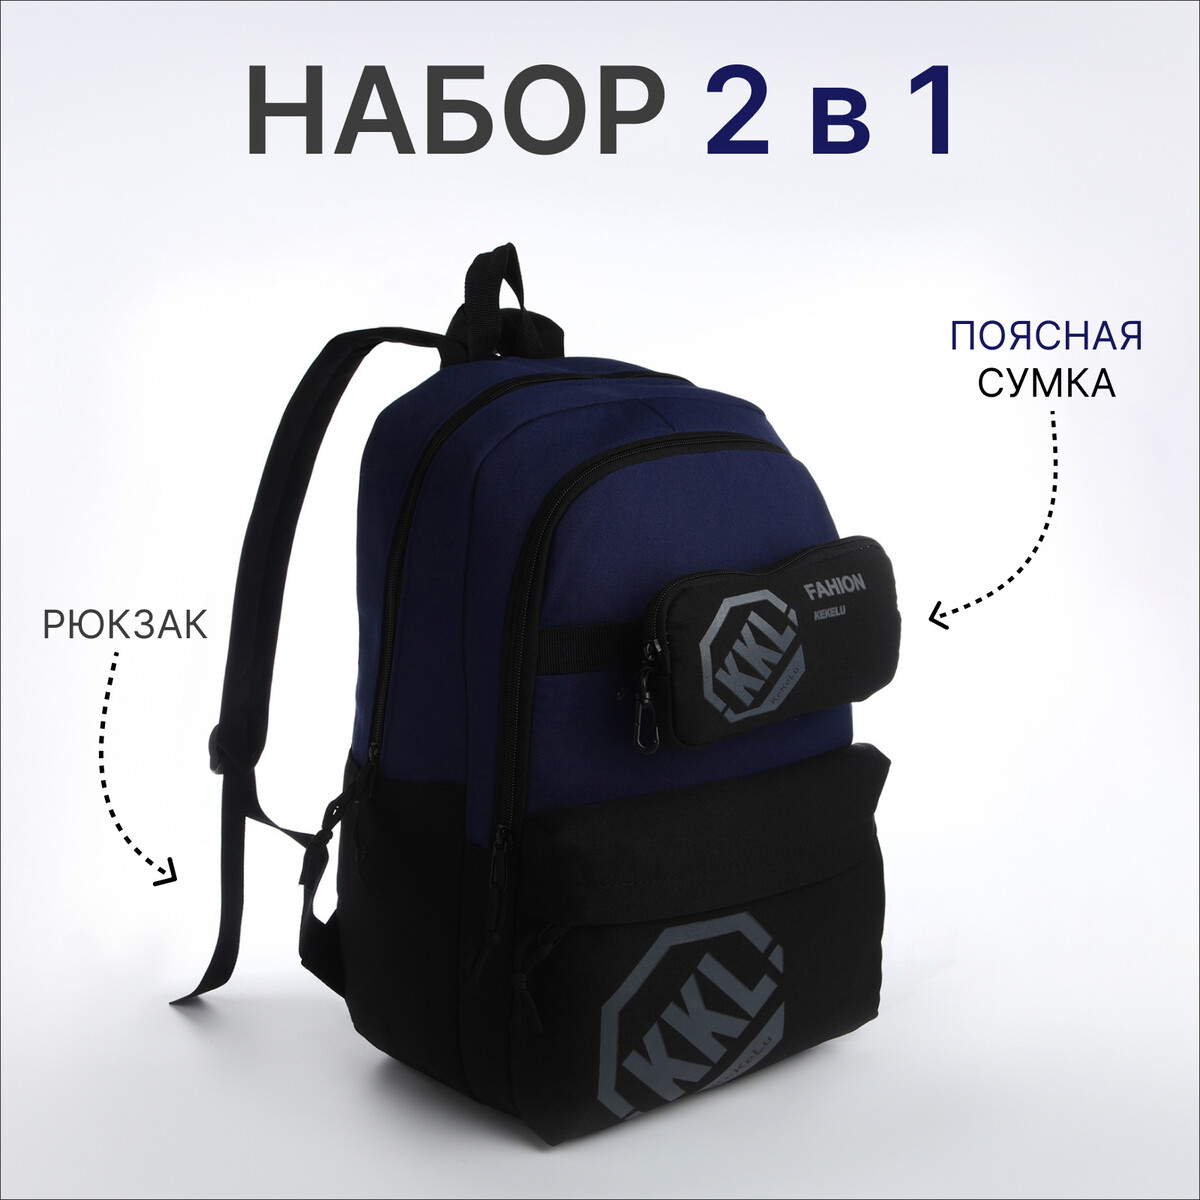 Рюкзак молодежный из текстиля на молнии, 3 кармана, сумка, держатель для чемодана, цвет черный/синий рюкзак молодежный grizzly с карманом для ноутбука 15 ru 432 4 3 синий